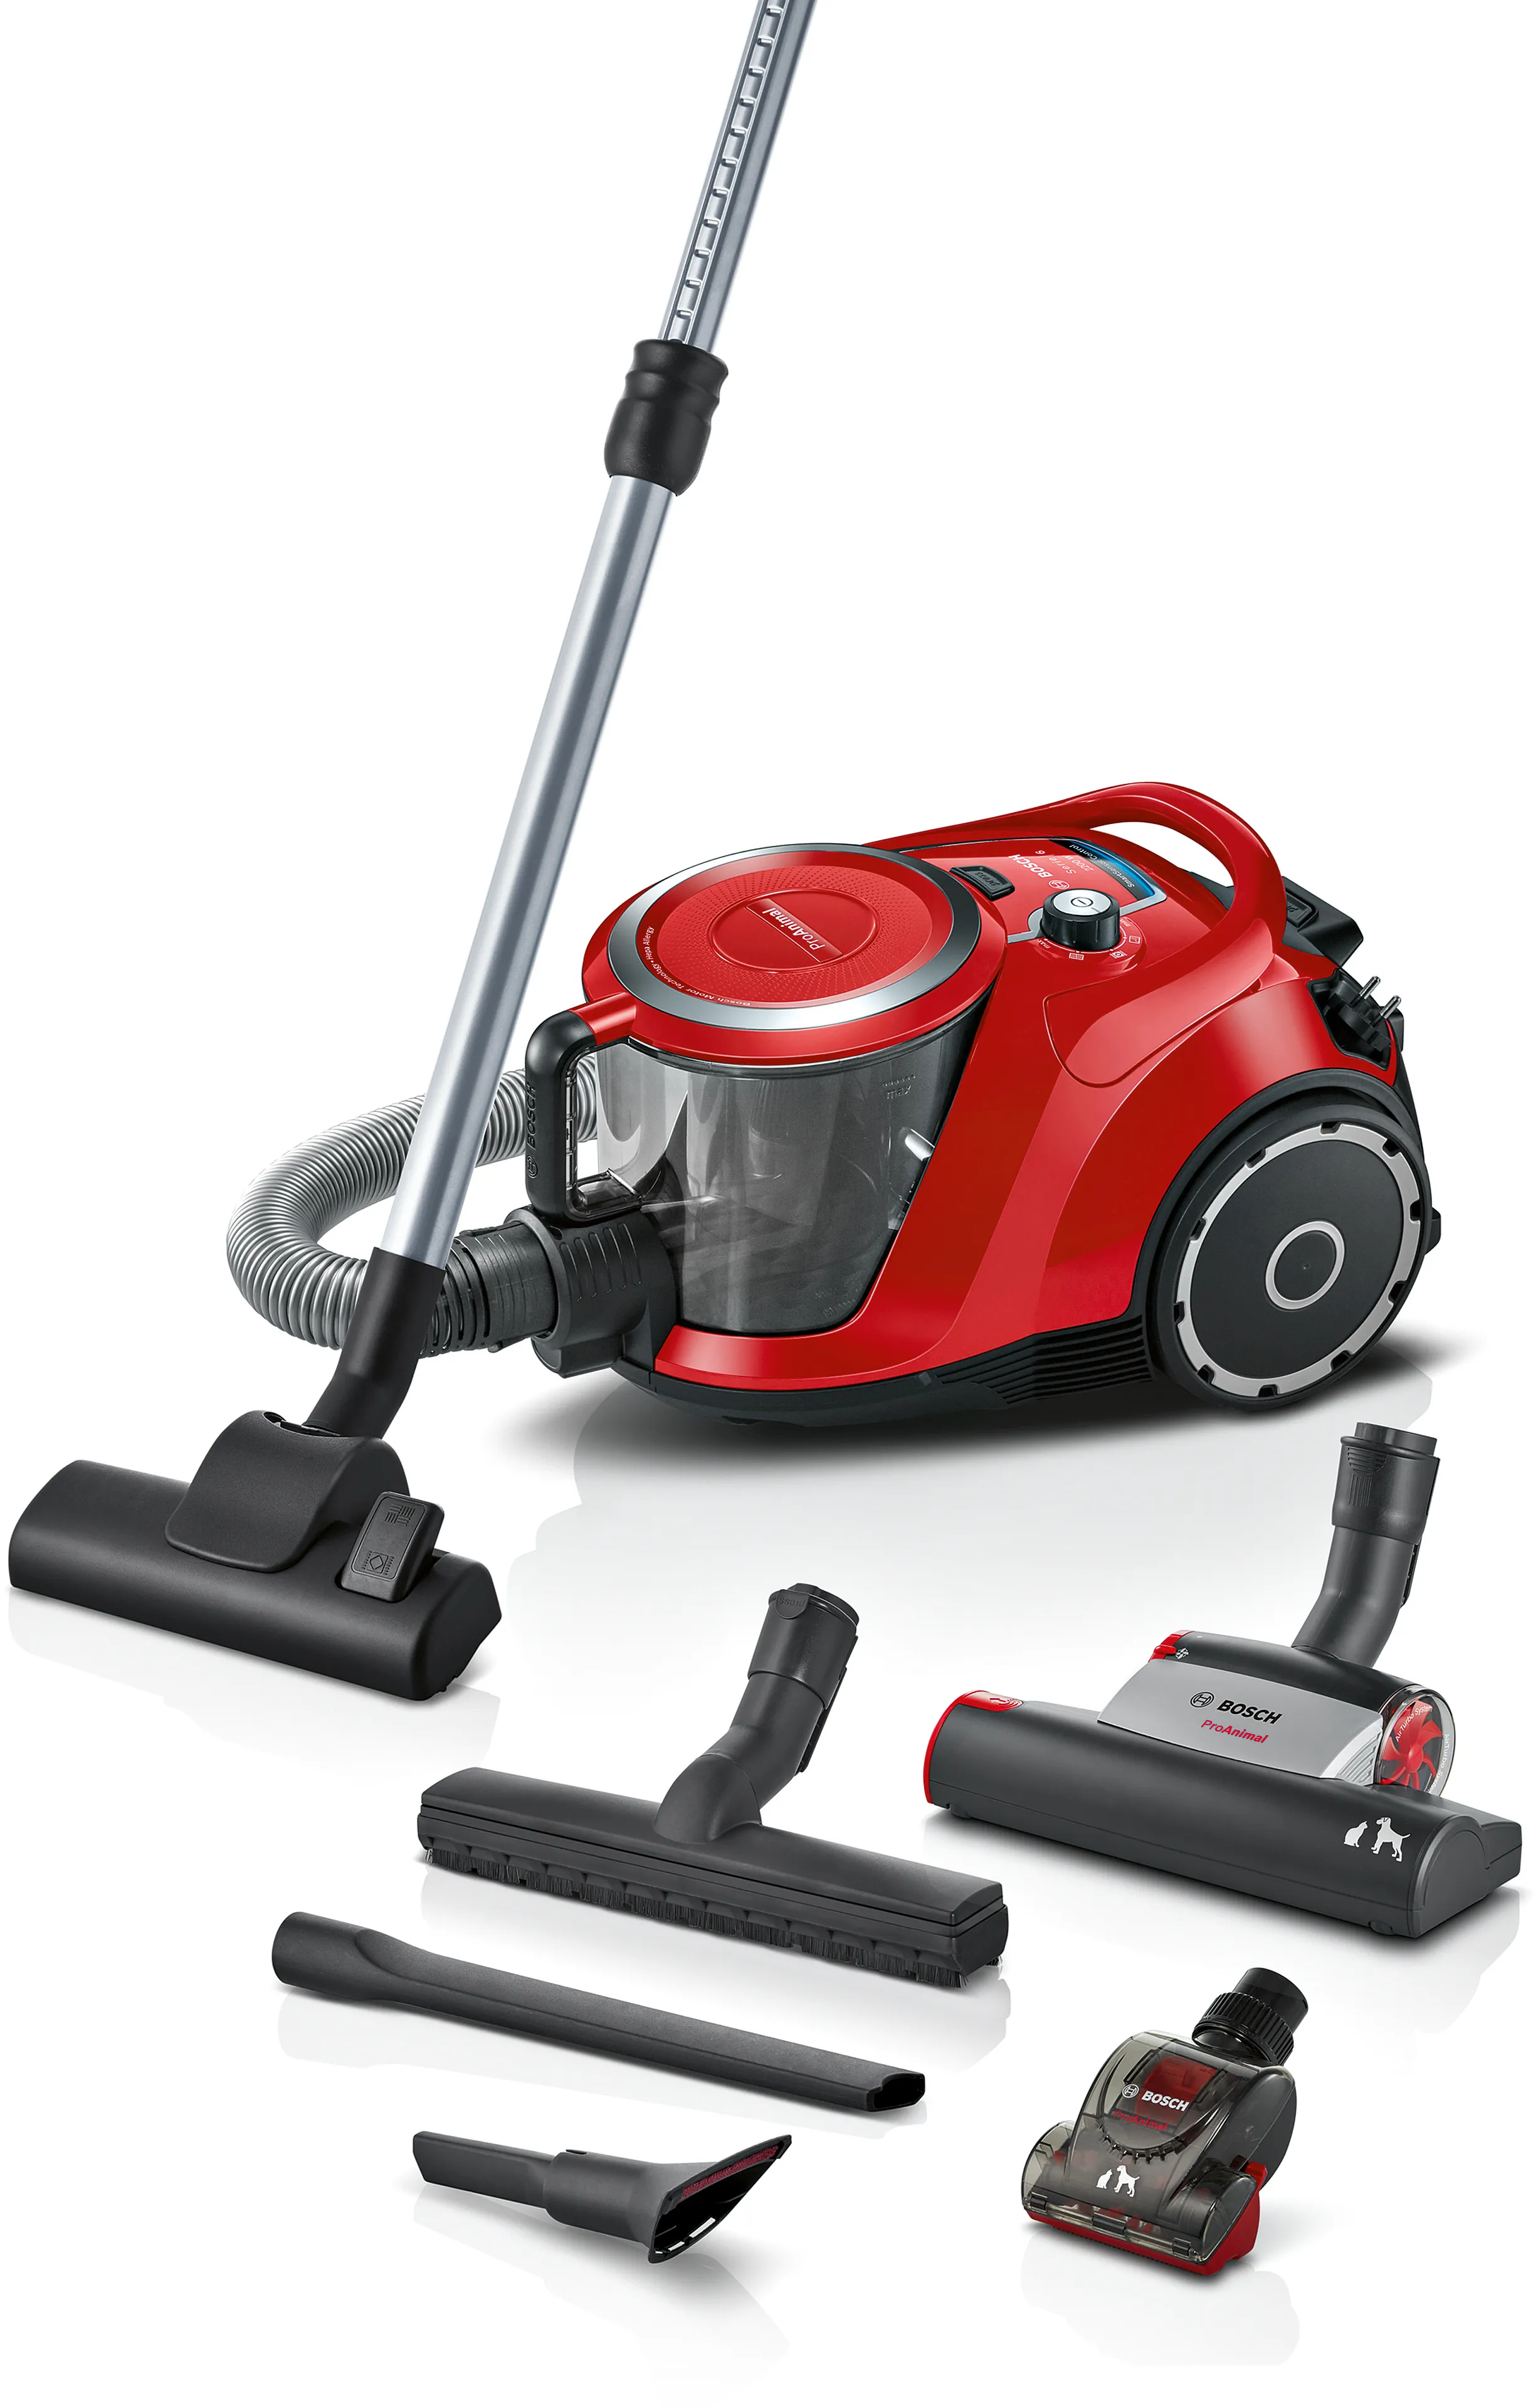 ซีรี่ 6 Bagless vacuum cleaner ProAnimal สีแดง 